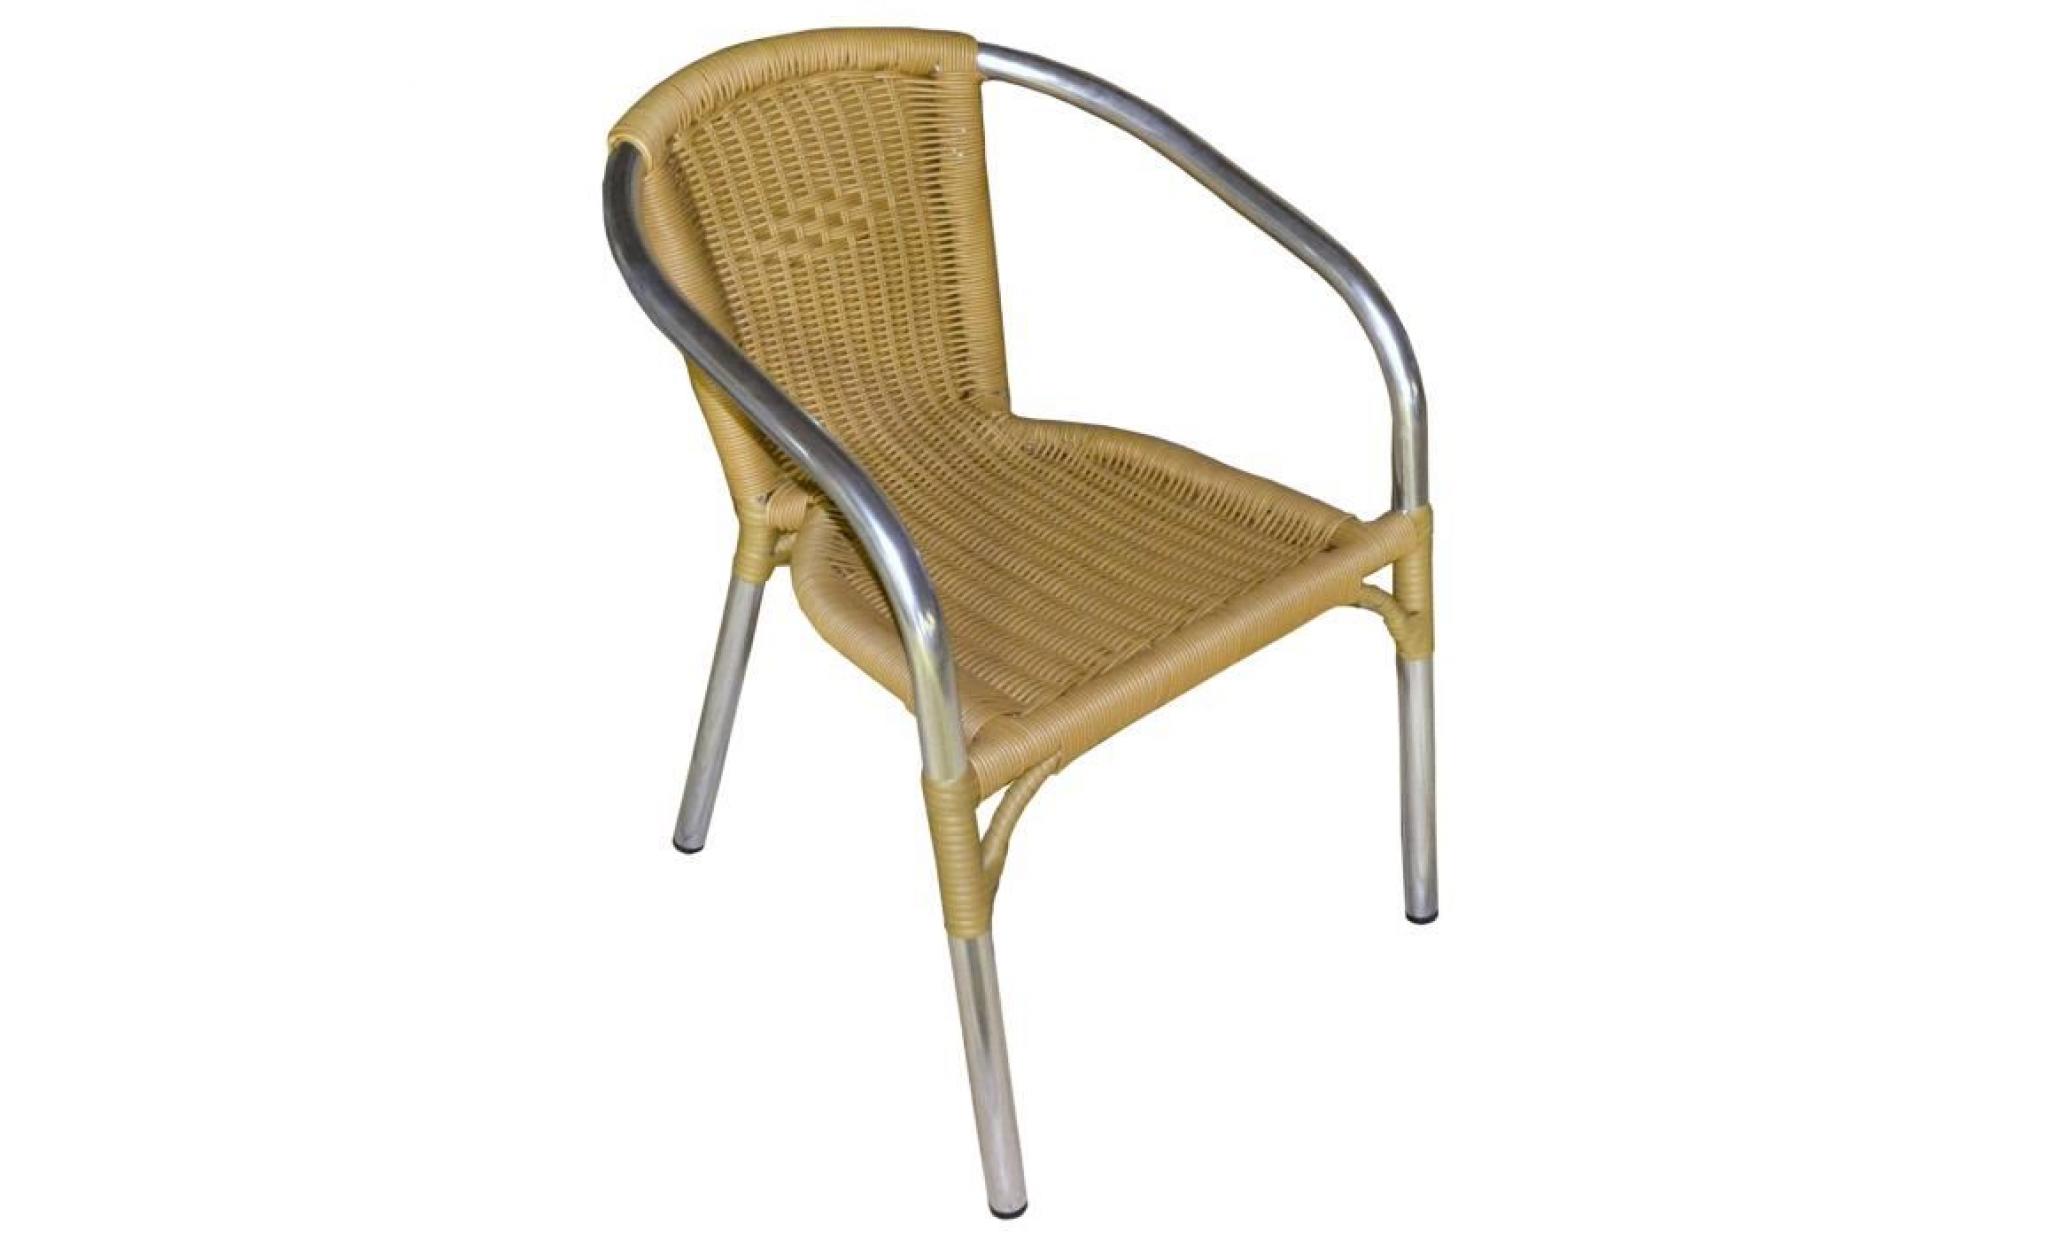 fauteuil de jardin en aluminium naturel renforcé et assise coloris naturel   dim : h 75 x l 61 x p 54 cm